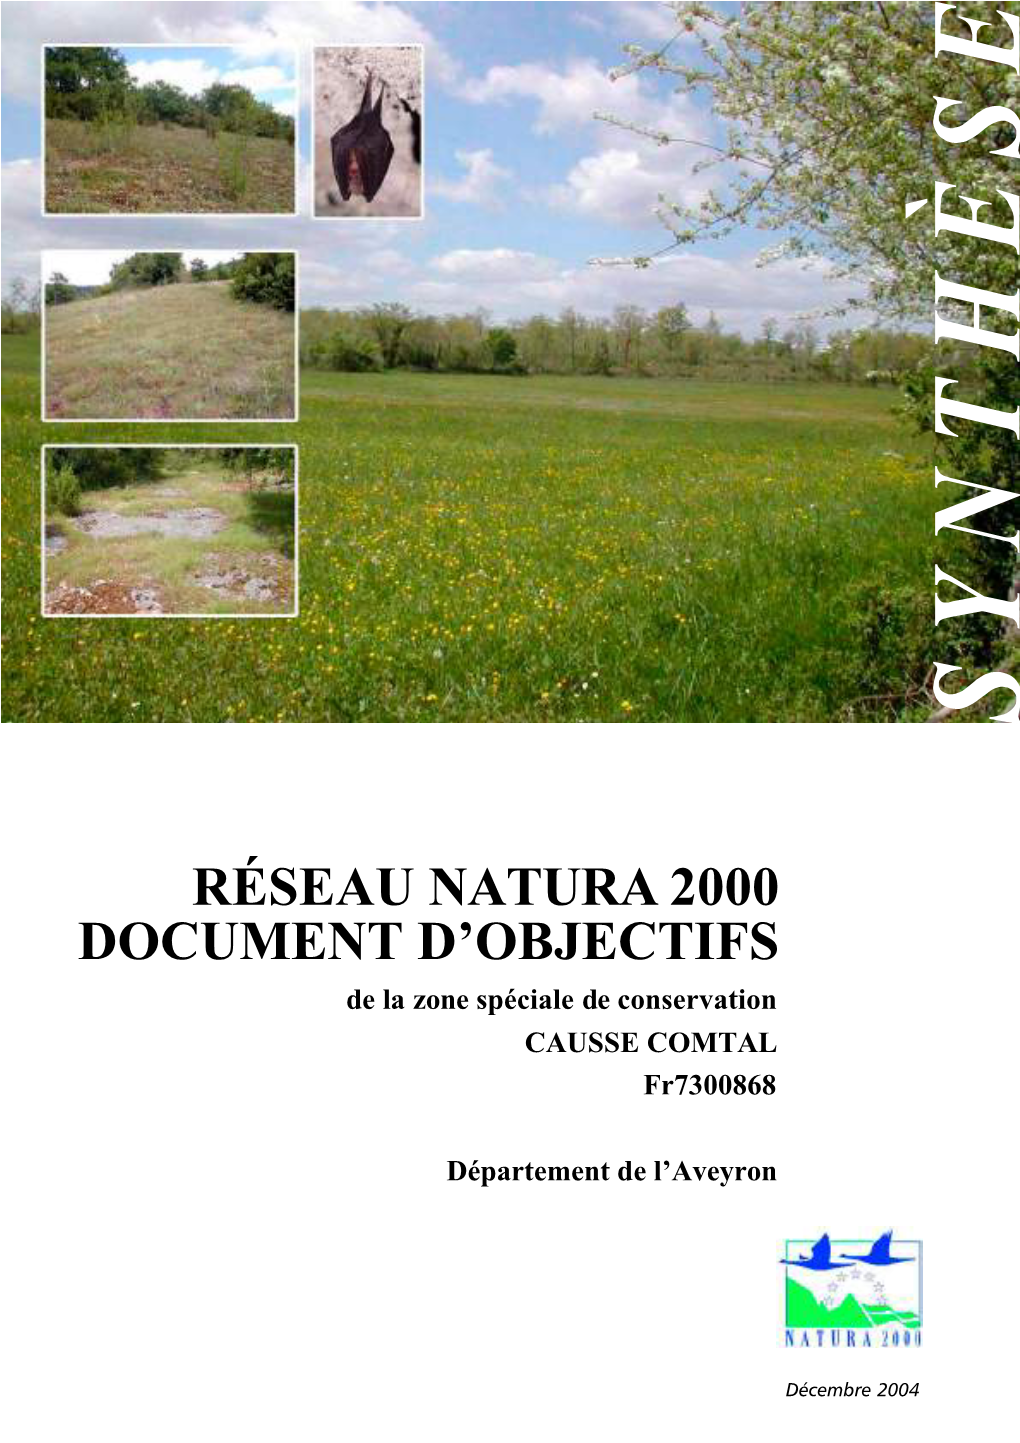 Réseau Natura 2000 Document D'objectifs